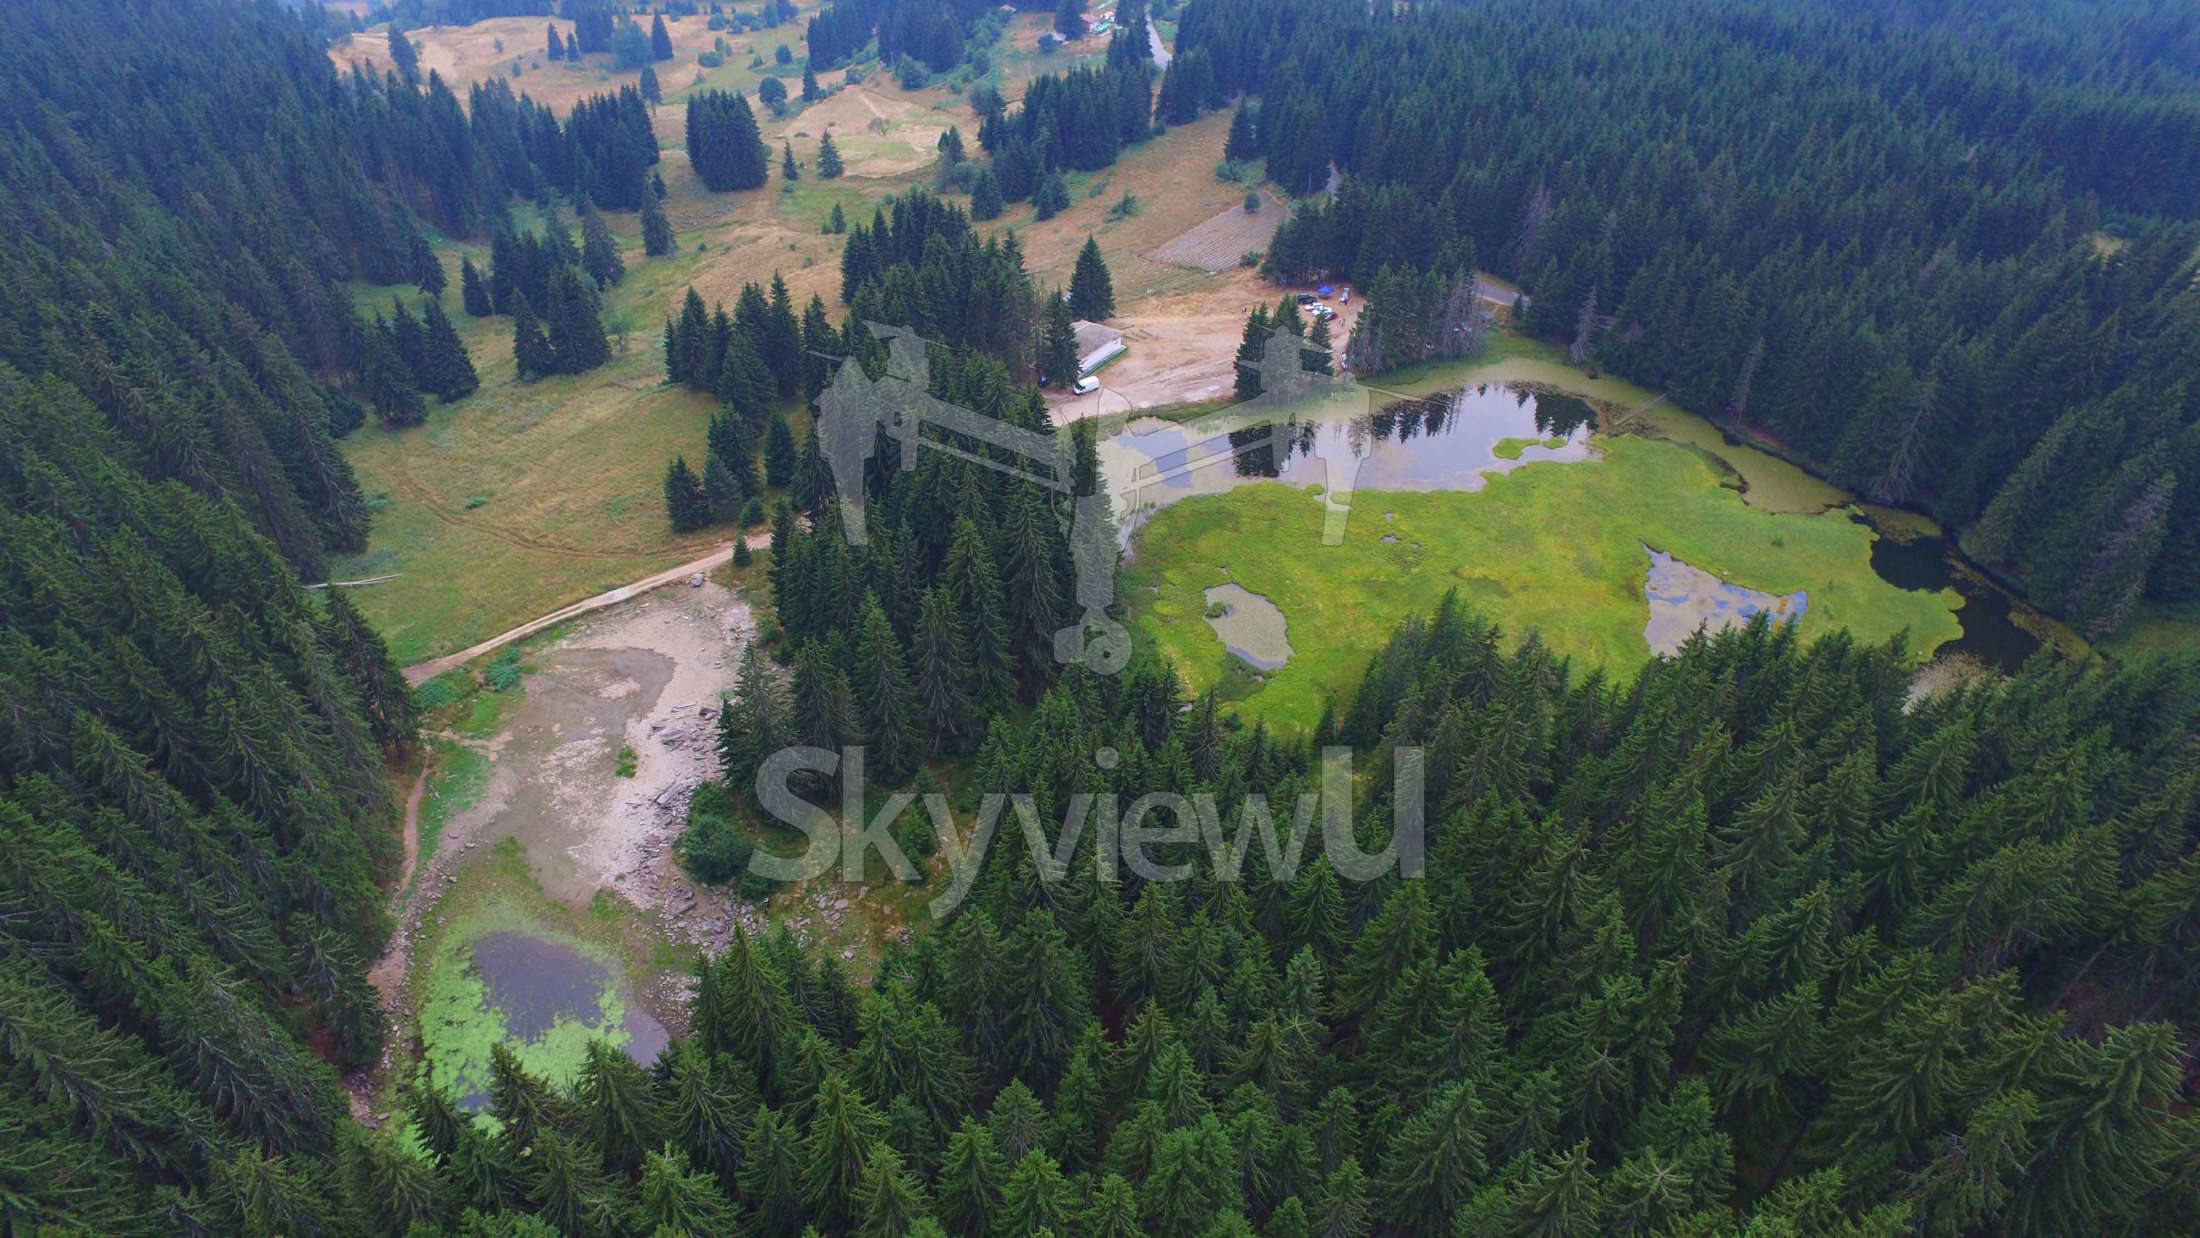 SkyvuewU-България-дрон-фотография-и-коптер-въздушно-заснемане-с-DJI-Inspire-1-на-забележителности-,-природа-,-исторически-местности-,-пейзажи-,-туристически-обекти-и-национални-красоти23